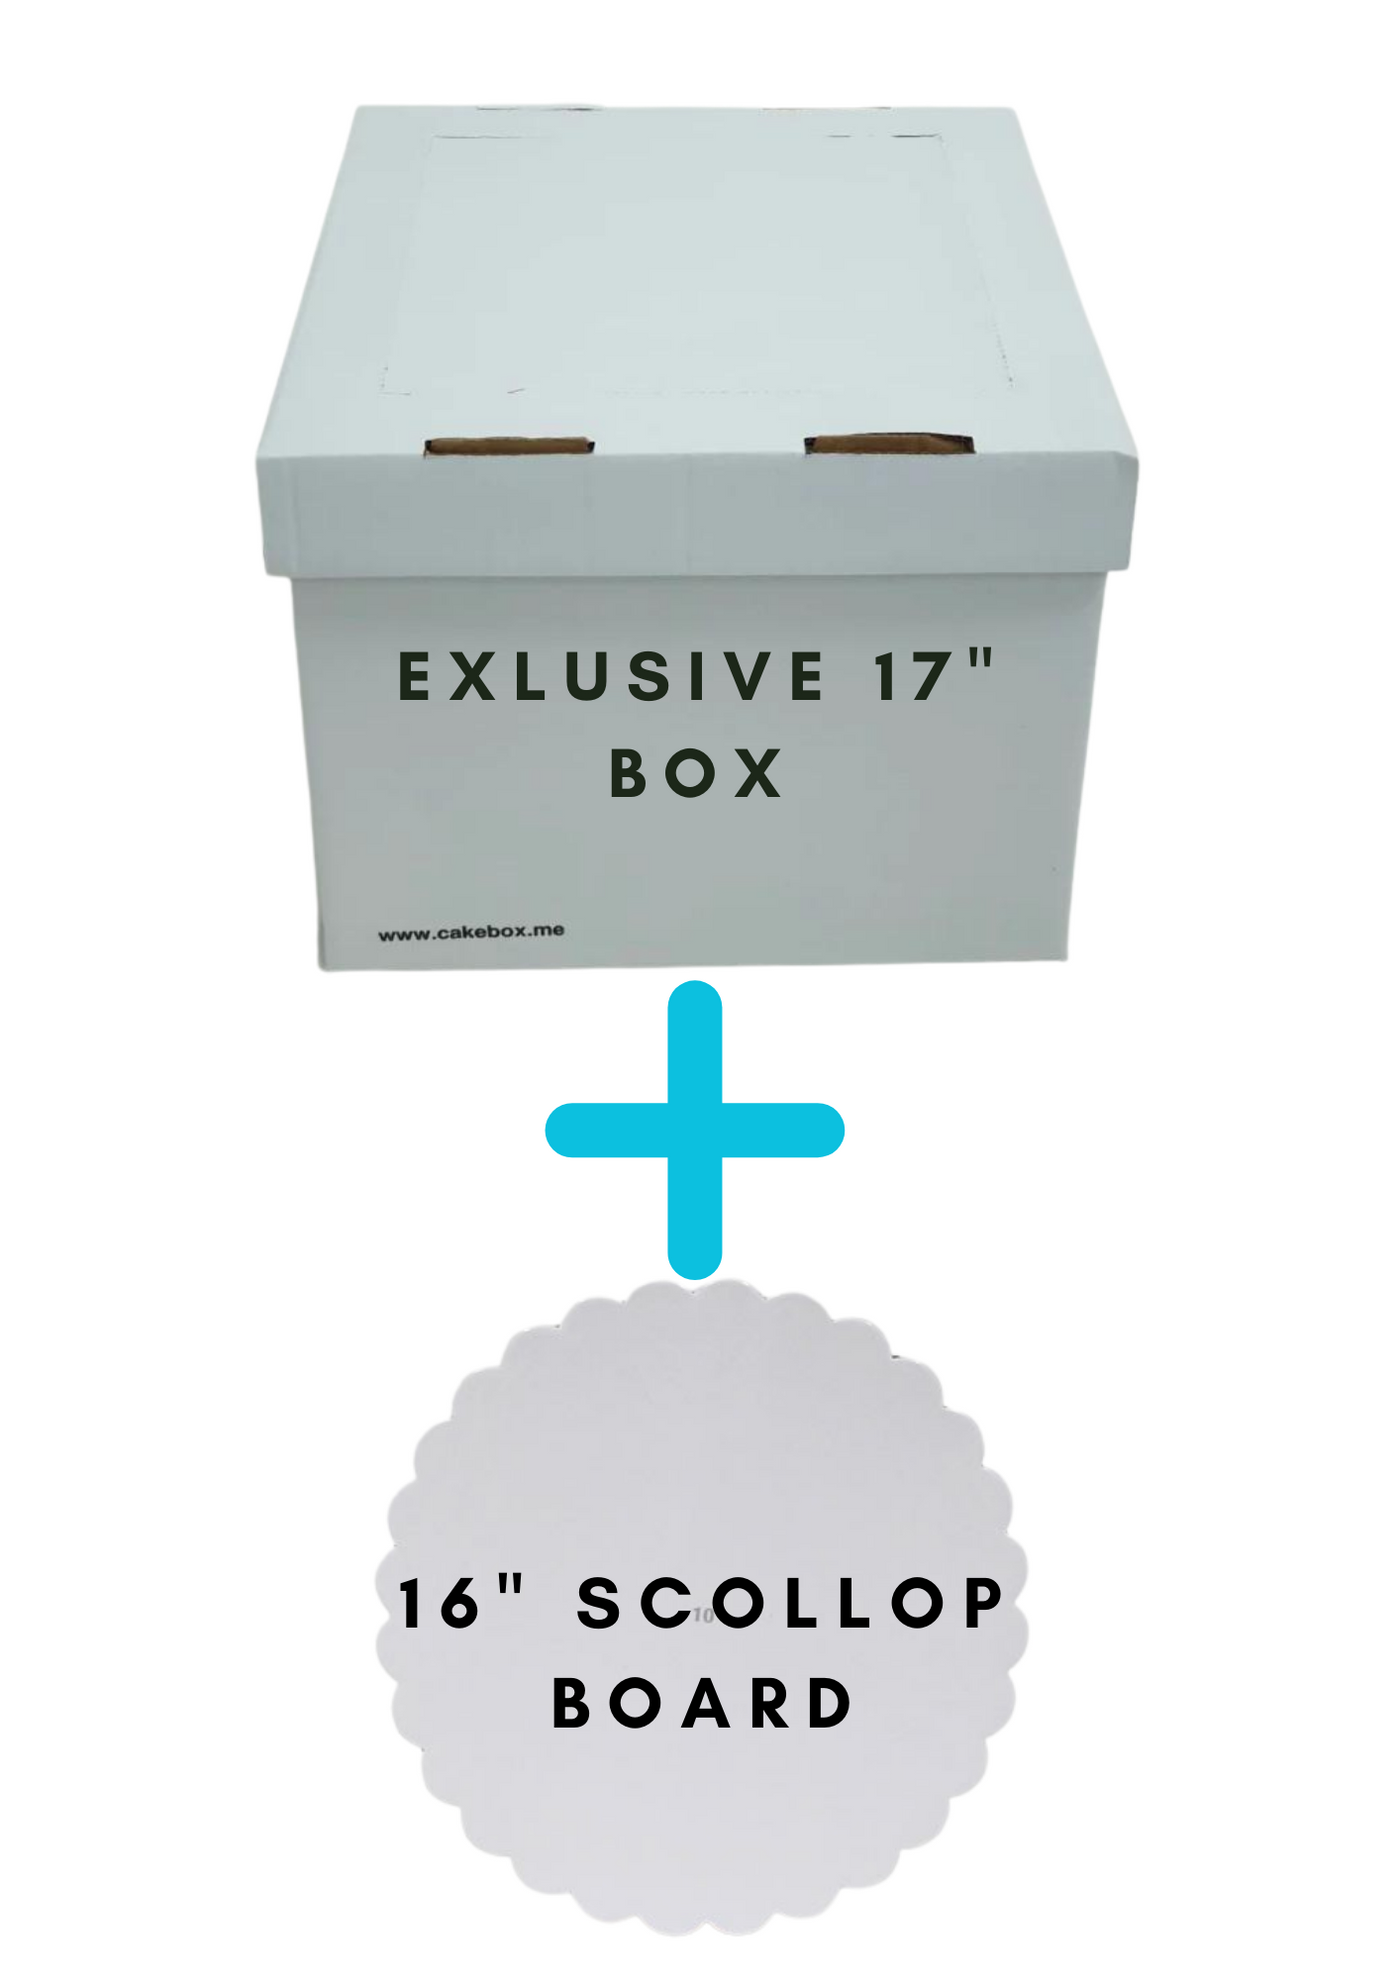 EXCLUSIVE! 17" Cake Box + 16" Scallop Board combo